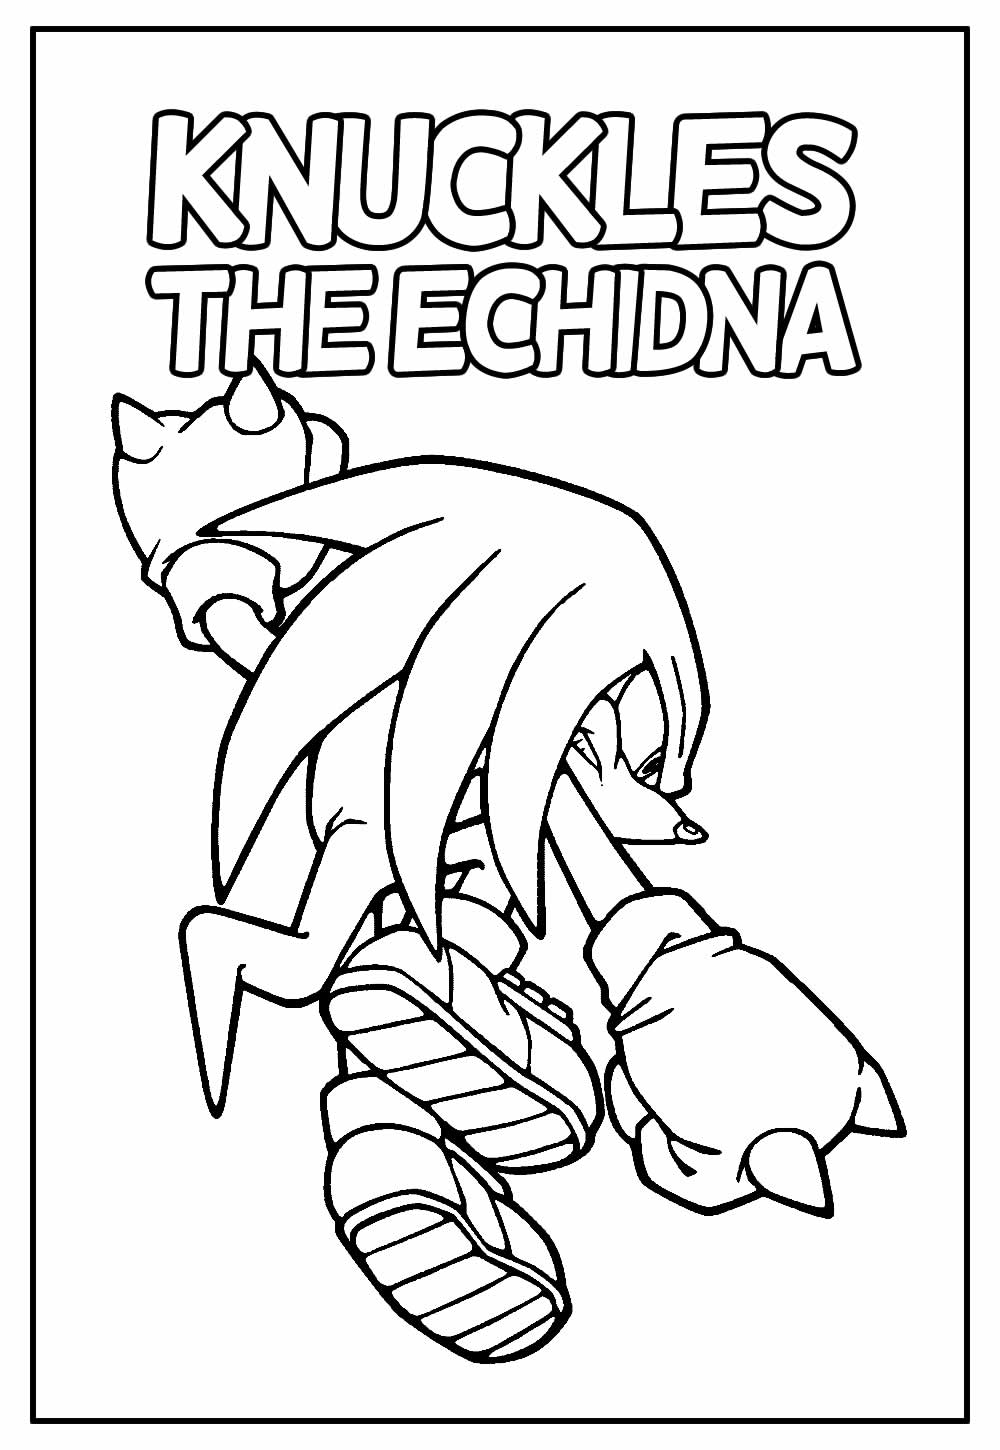 59 desenhos do Sonic para colorir